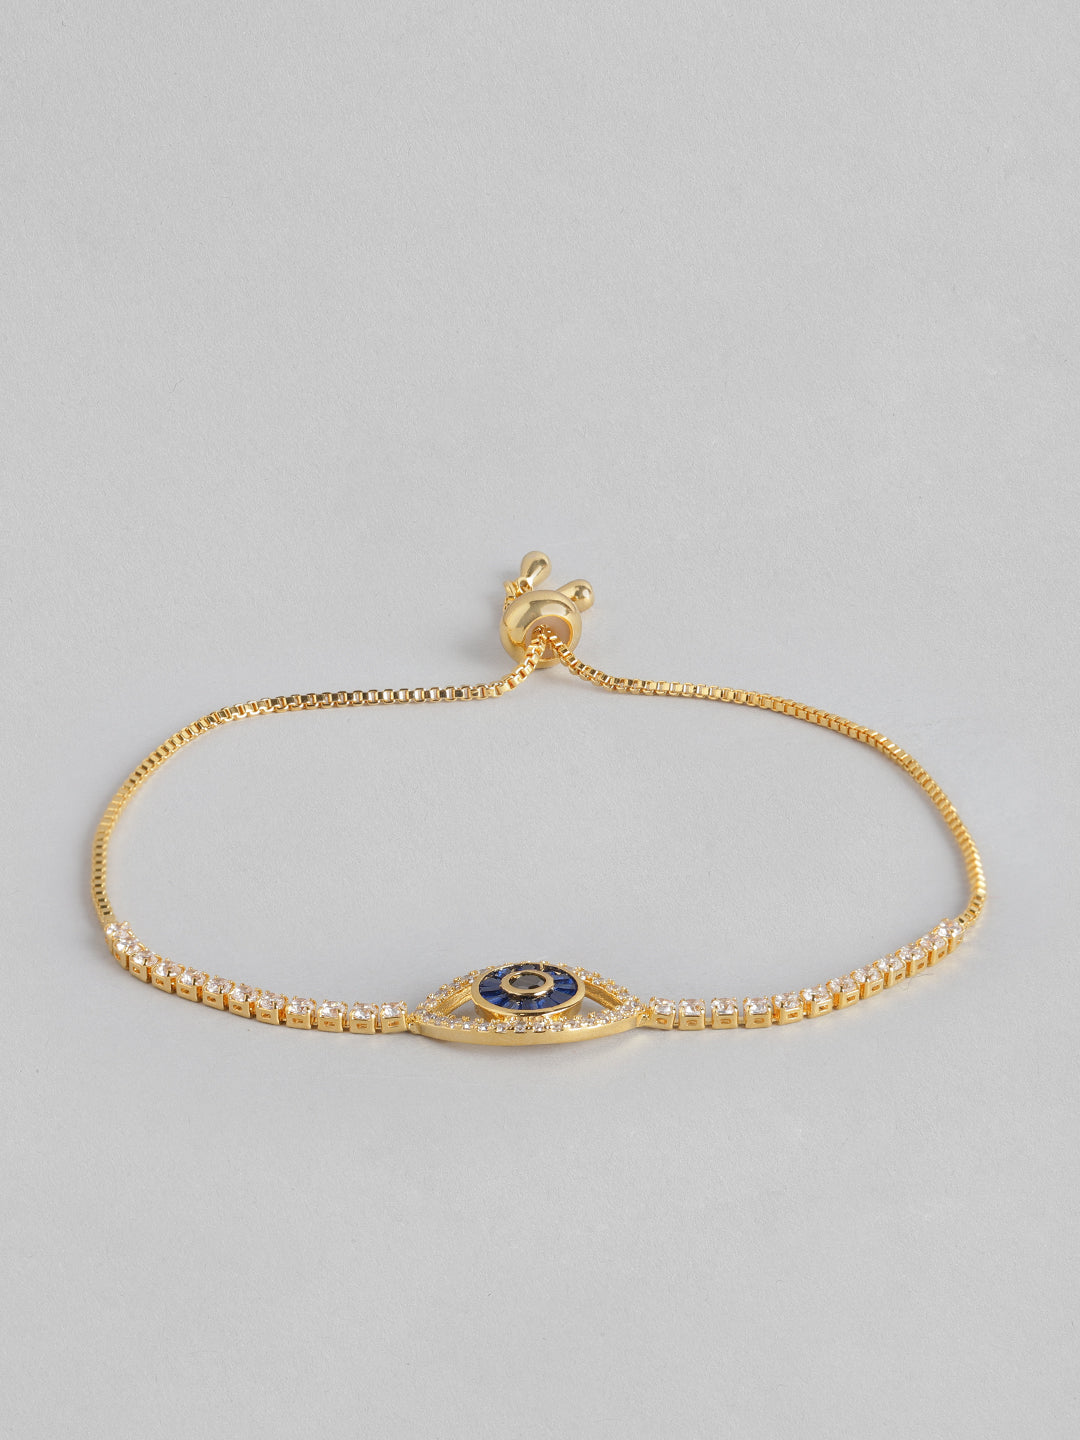 Blueberry Delicate evil eye chain bracelet